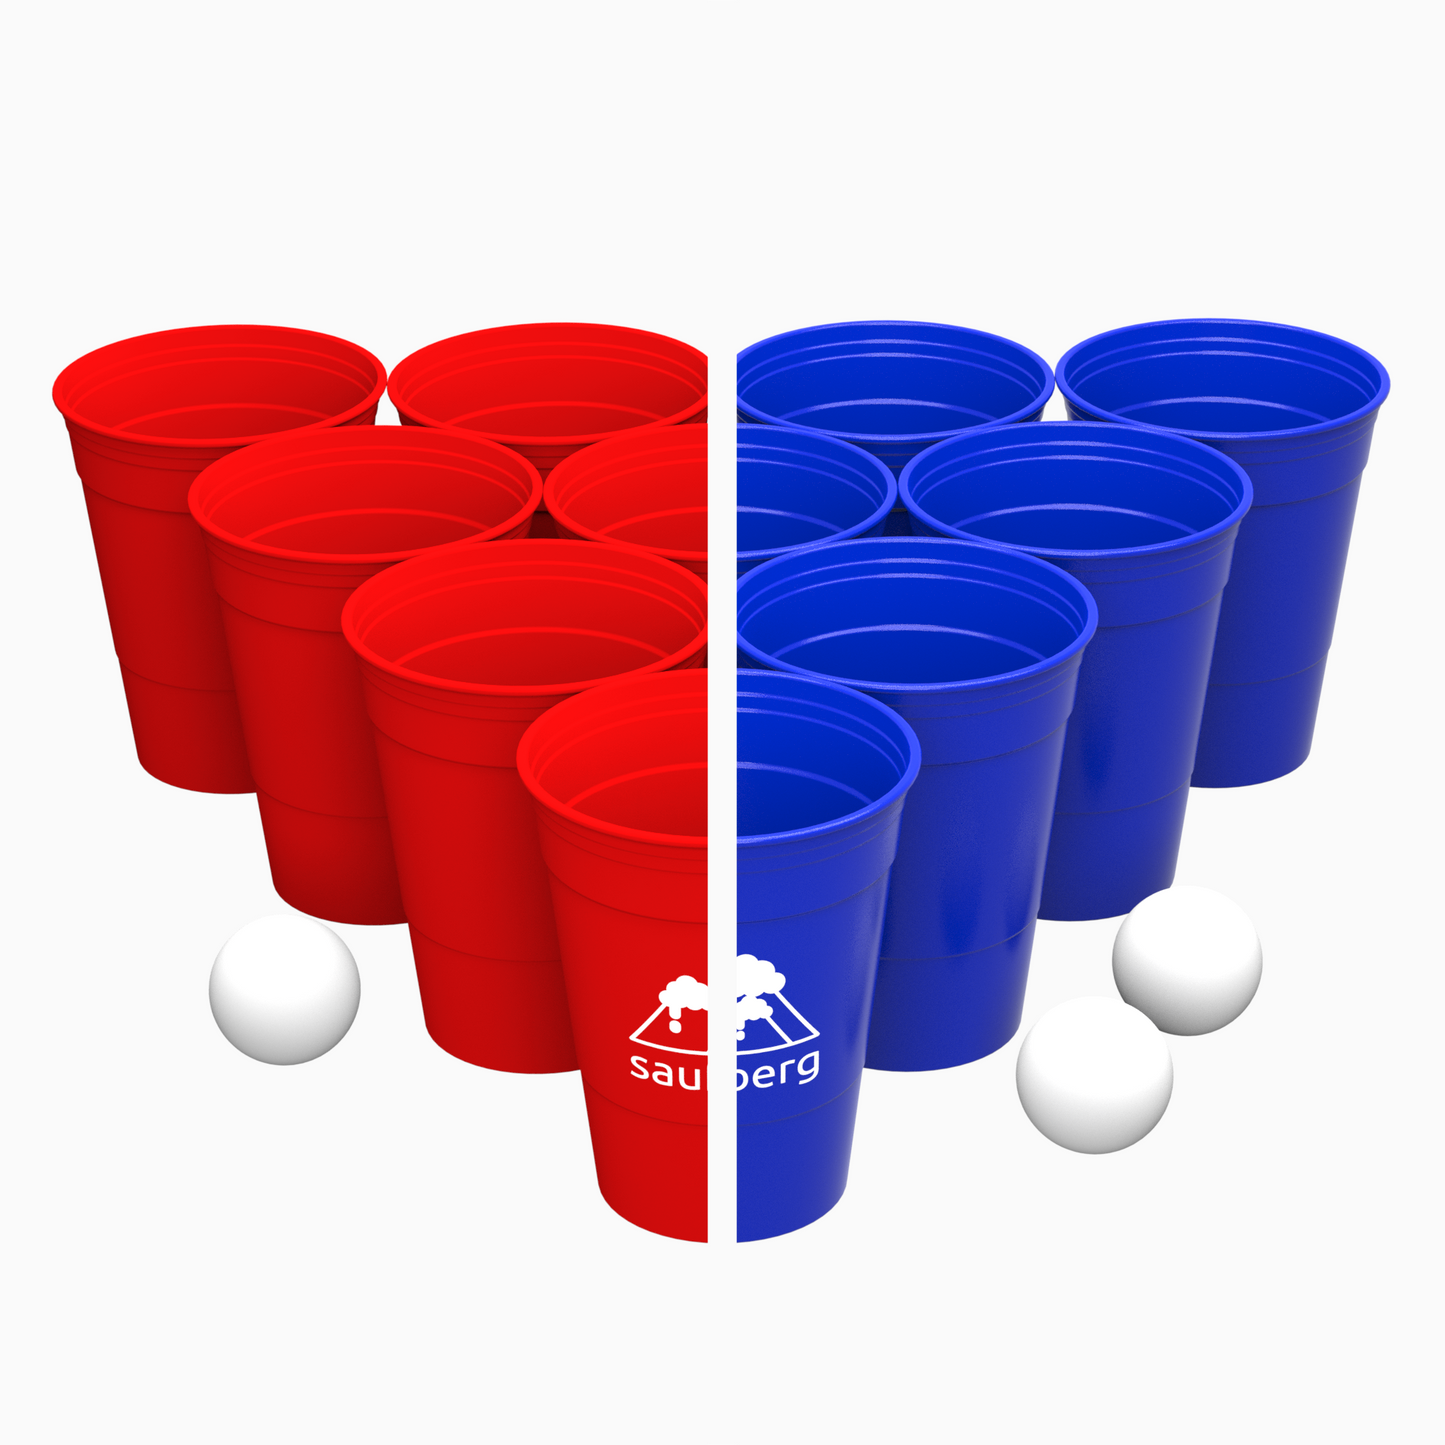 Bierpong-Set mit 12 blauen und 12 roten Mehrweg-Beerpong-Bechern aus Hartplastik und 6 Tischtennisbällen! Nachhaltig, Spülmaschinenfest und preiswert für jede Party.